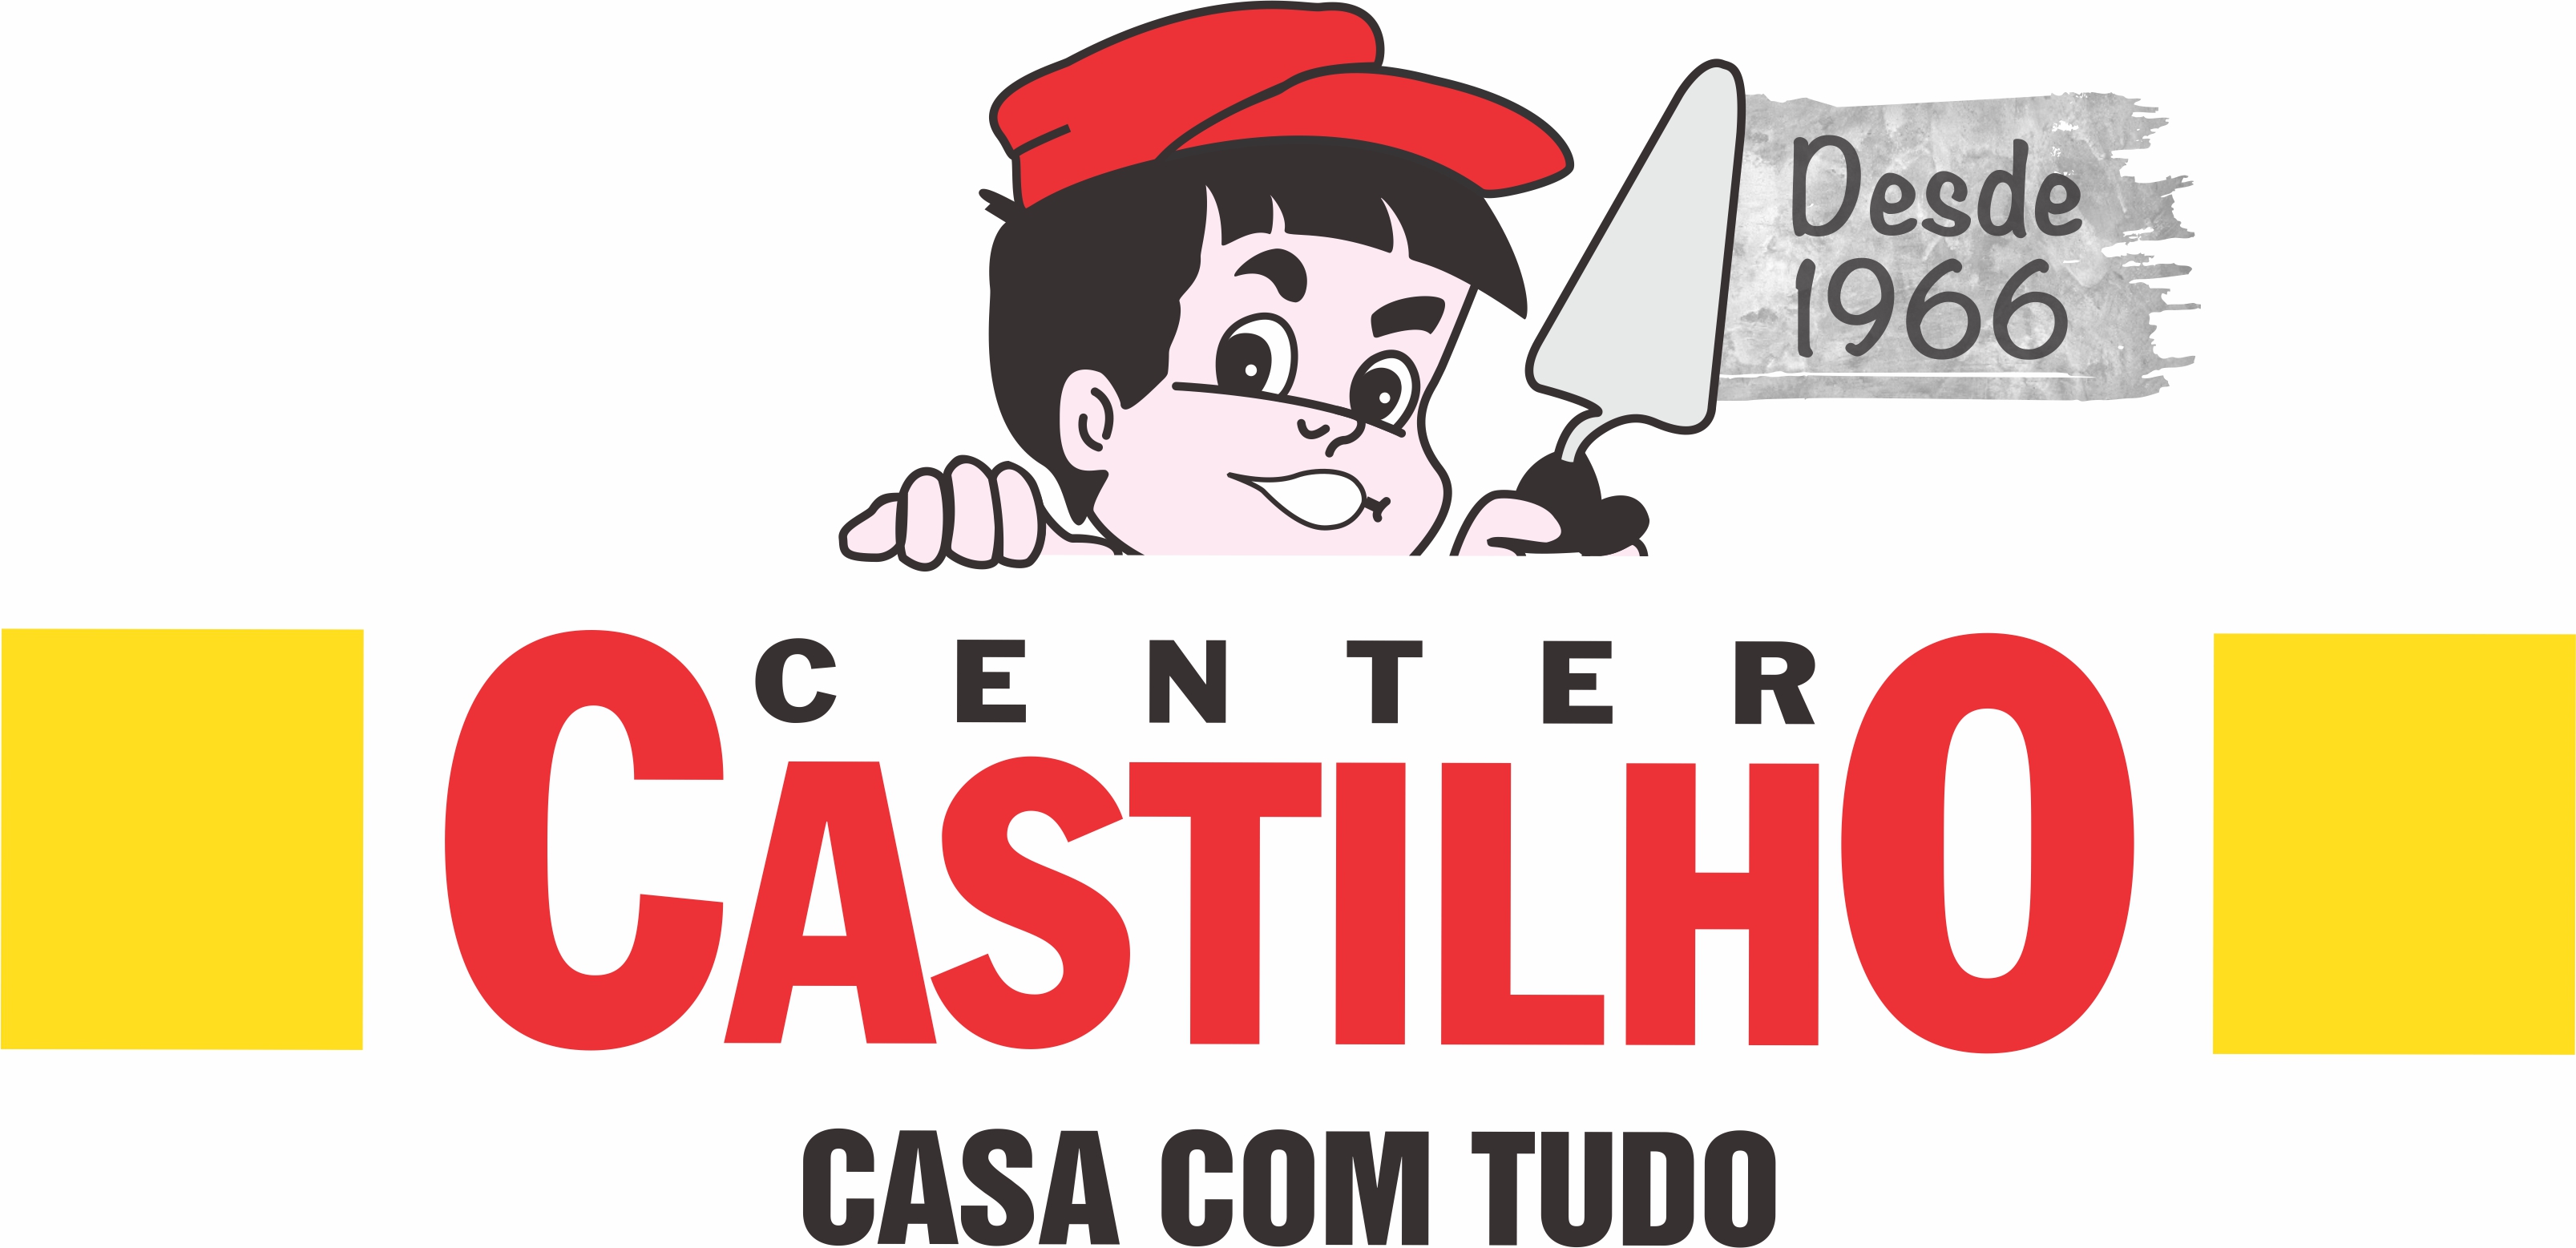 CENTER CASTILHO - Pisos - São Paulo, SP